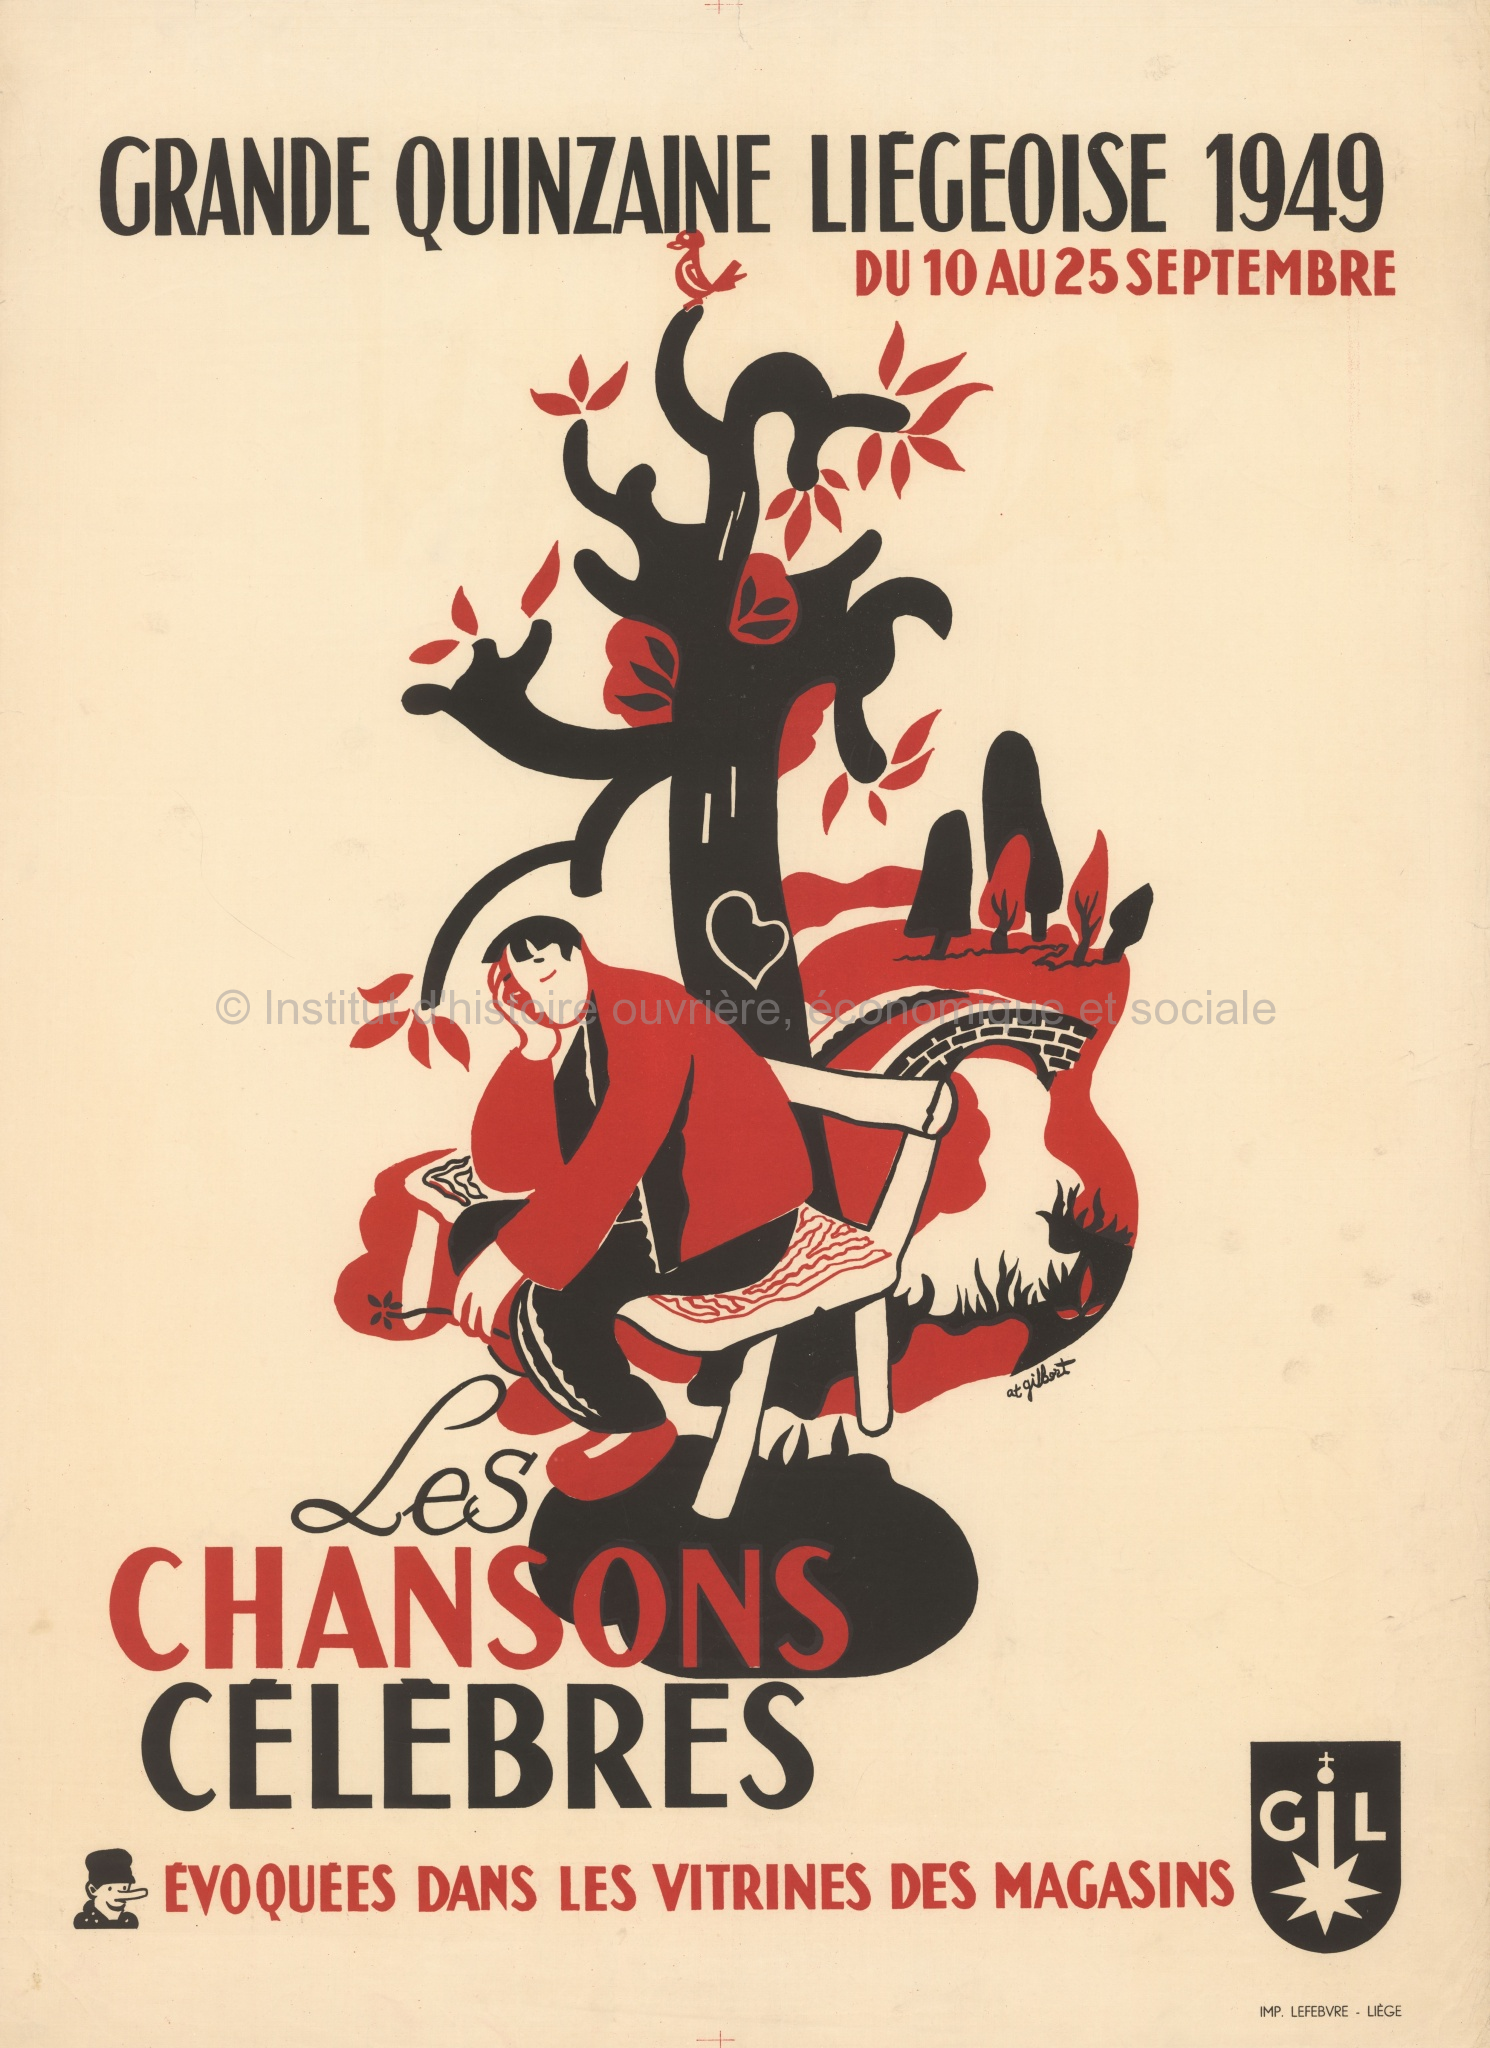 Affiche - Grande quinzaine liégeoise 1949